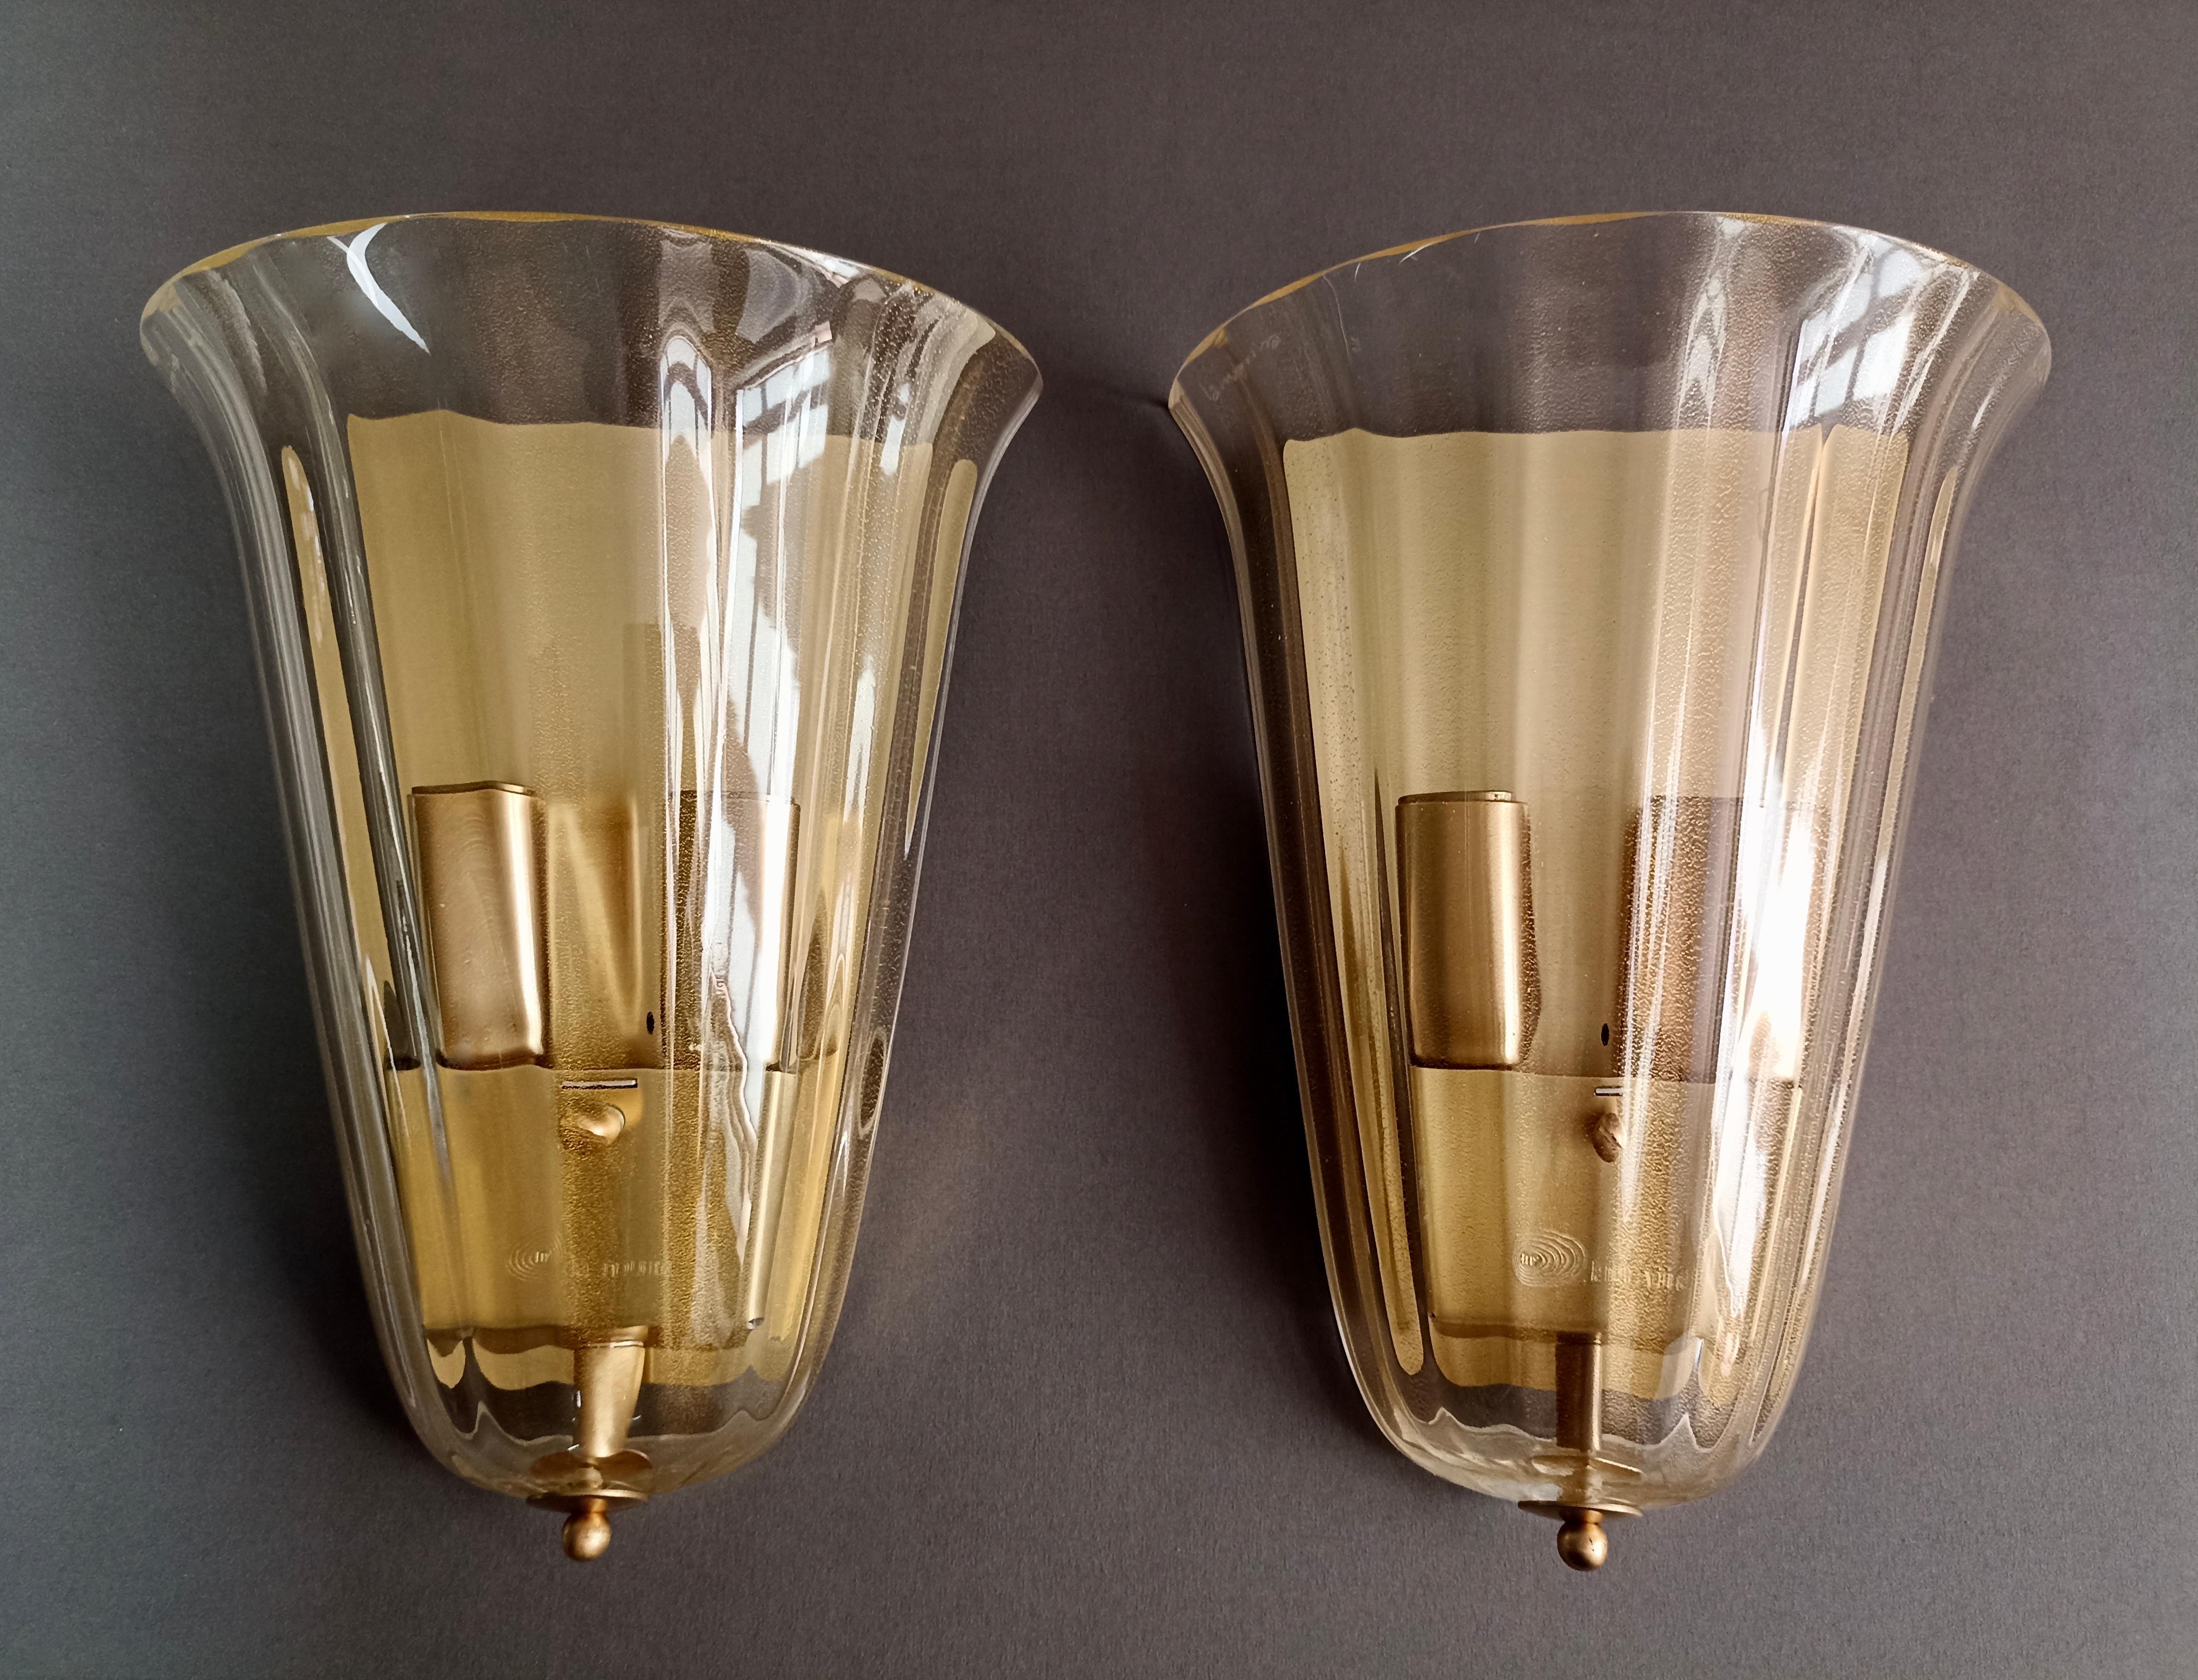 Satz von zwei wunderschönen zweiflammigen La Murrina-Leuchten aus den 1990er Jahren aus klarem Muranoglas mit goldenen Einschlüssen und wunderschöner gerippter Verarbeitung. Großer Stil.
Die Sockel und Lampenabdeckungen sind aus vergoldetem